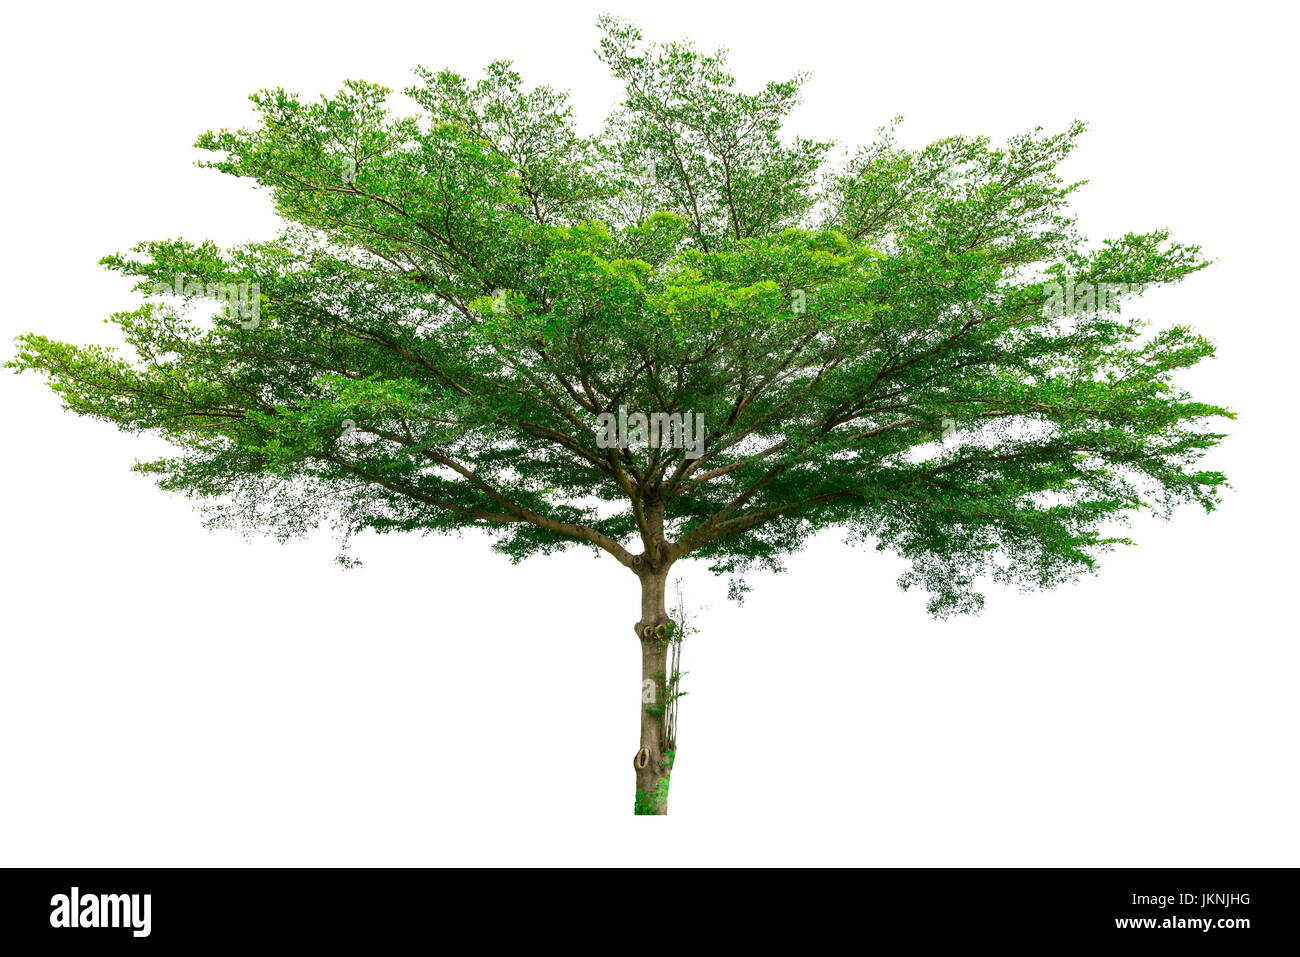 Green tree isolated on white background (Terminalia) Stock Photo